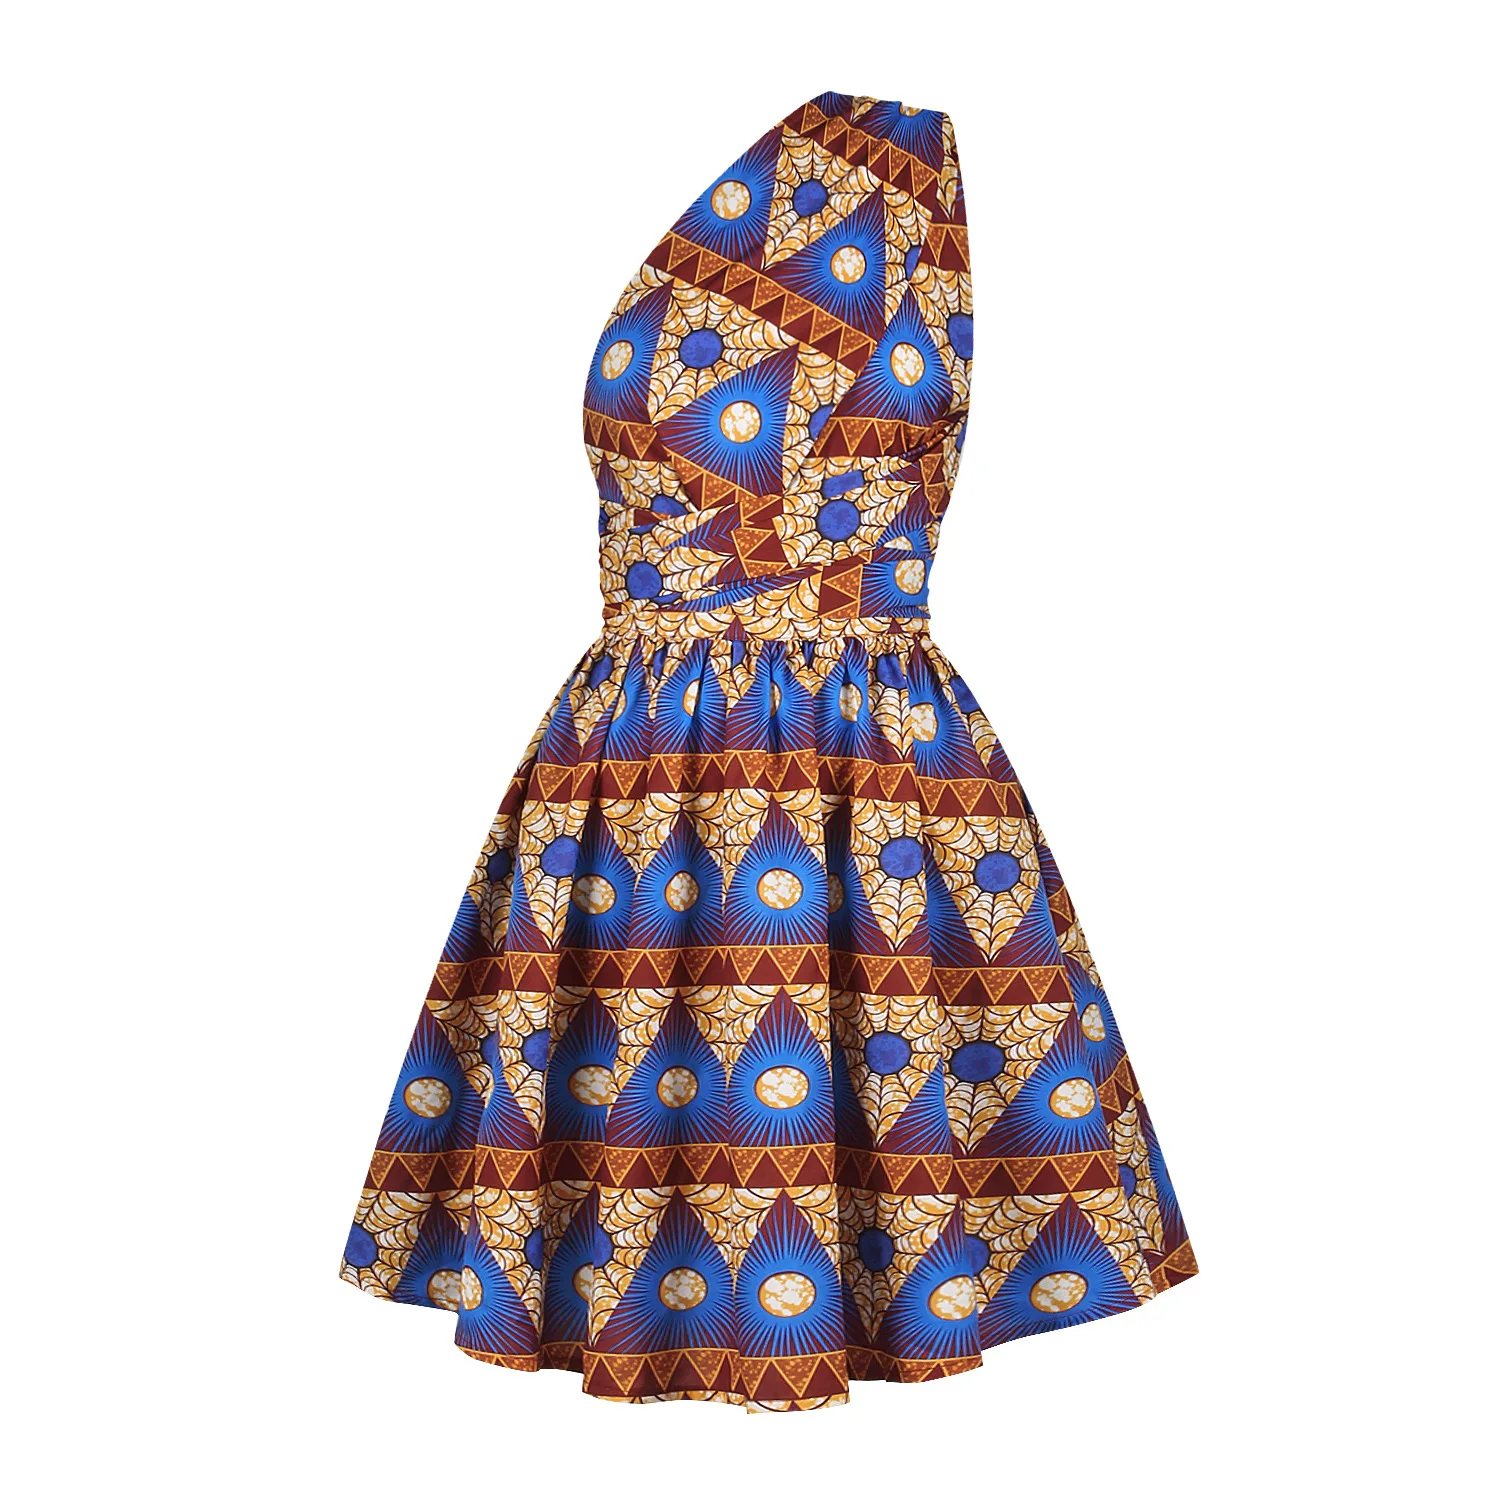 Принт африканские платья Женская традиционная африканская одежда Дашики Анкара сарафан элегантный многоразовая одежда Африканский батик одежда